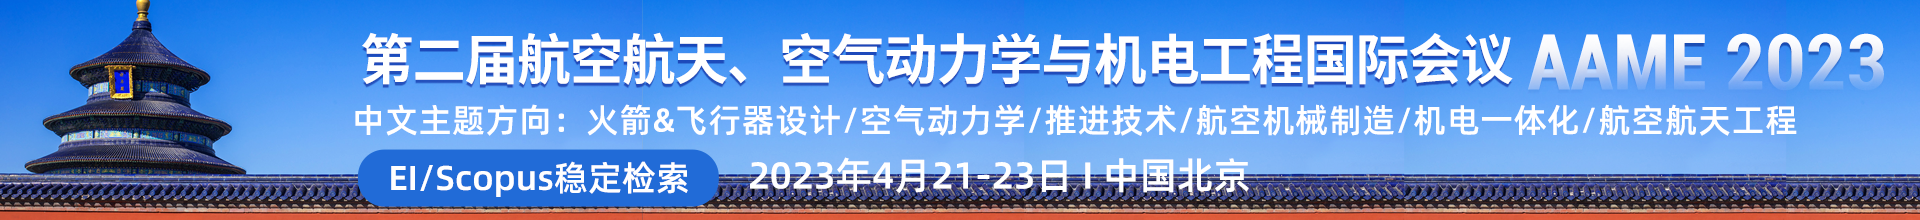 2023年4月21-23日AAME2023-学术会议云PC端（上线平台）-陈嘉妍-202201103.png